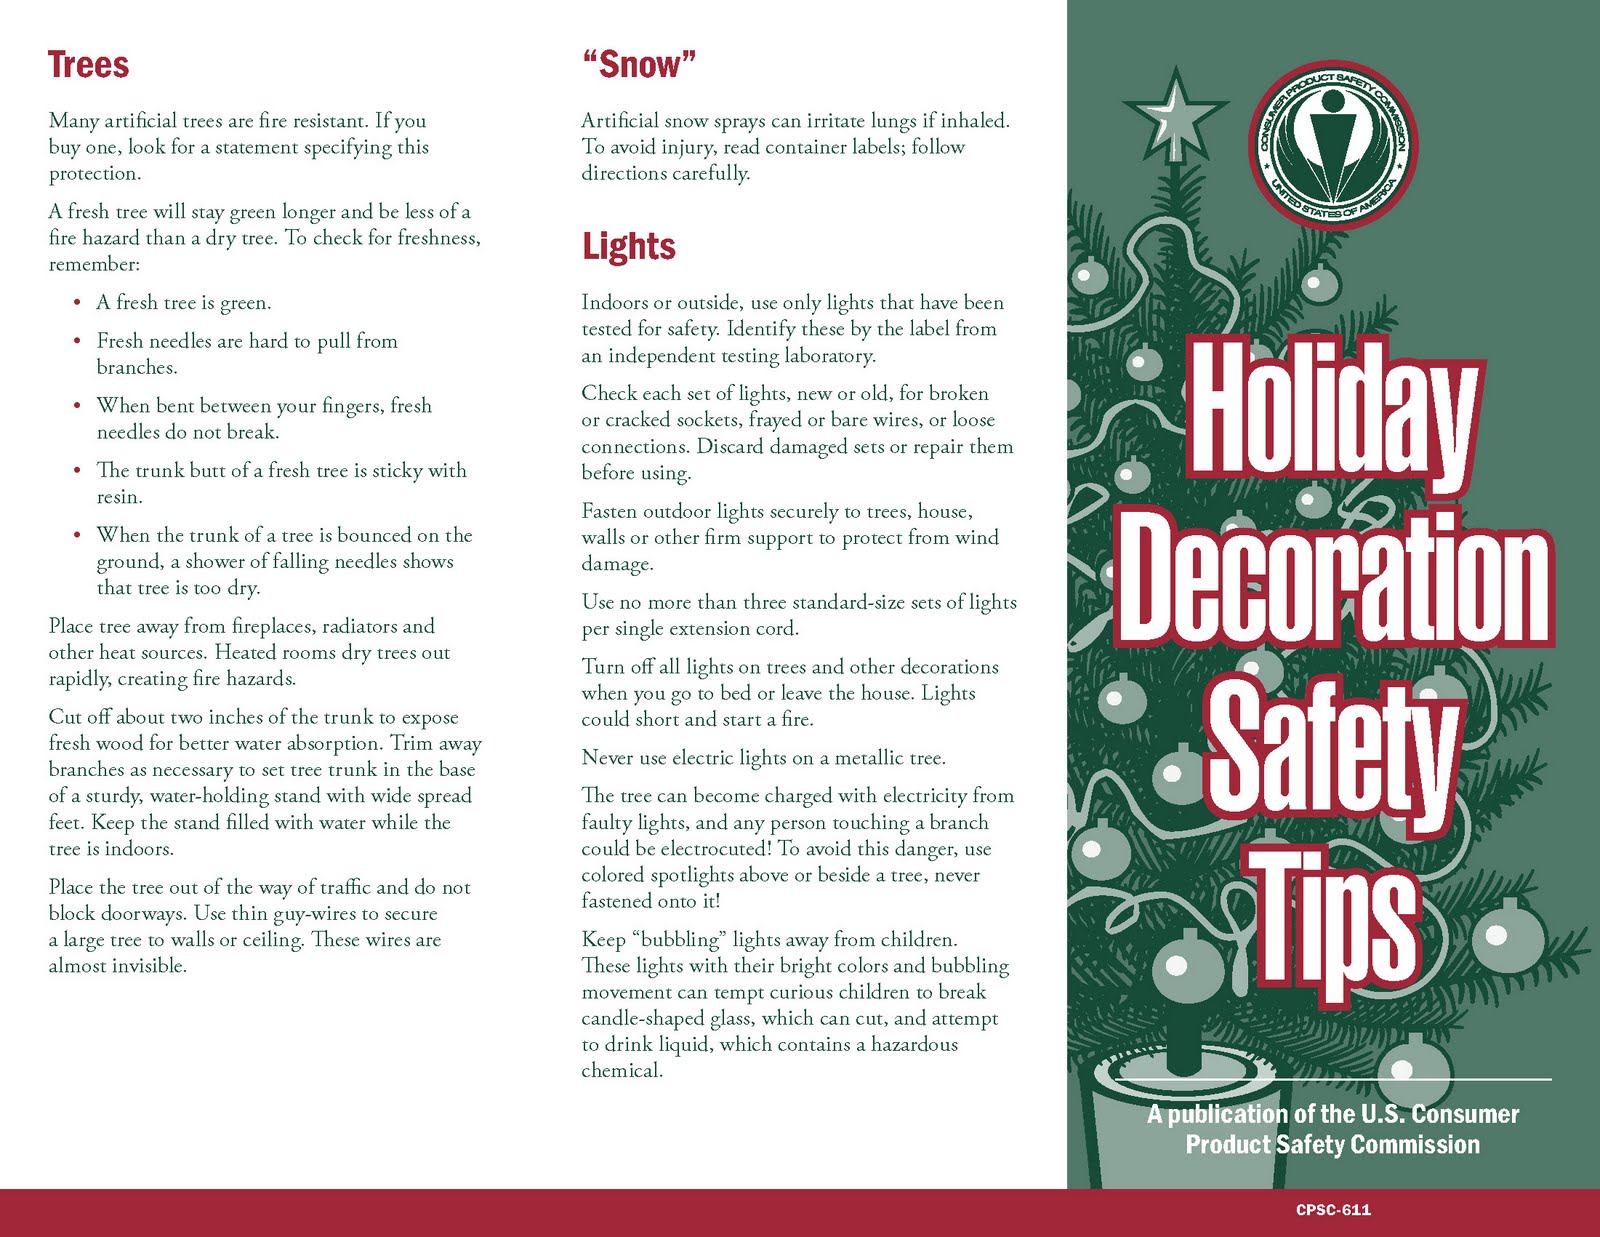 ... 我們關注列治文市政與民生: Christmas Decoration Safety Tips